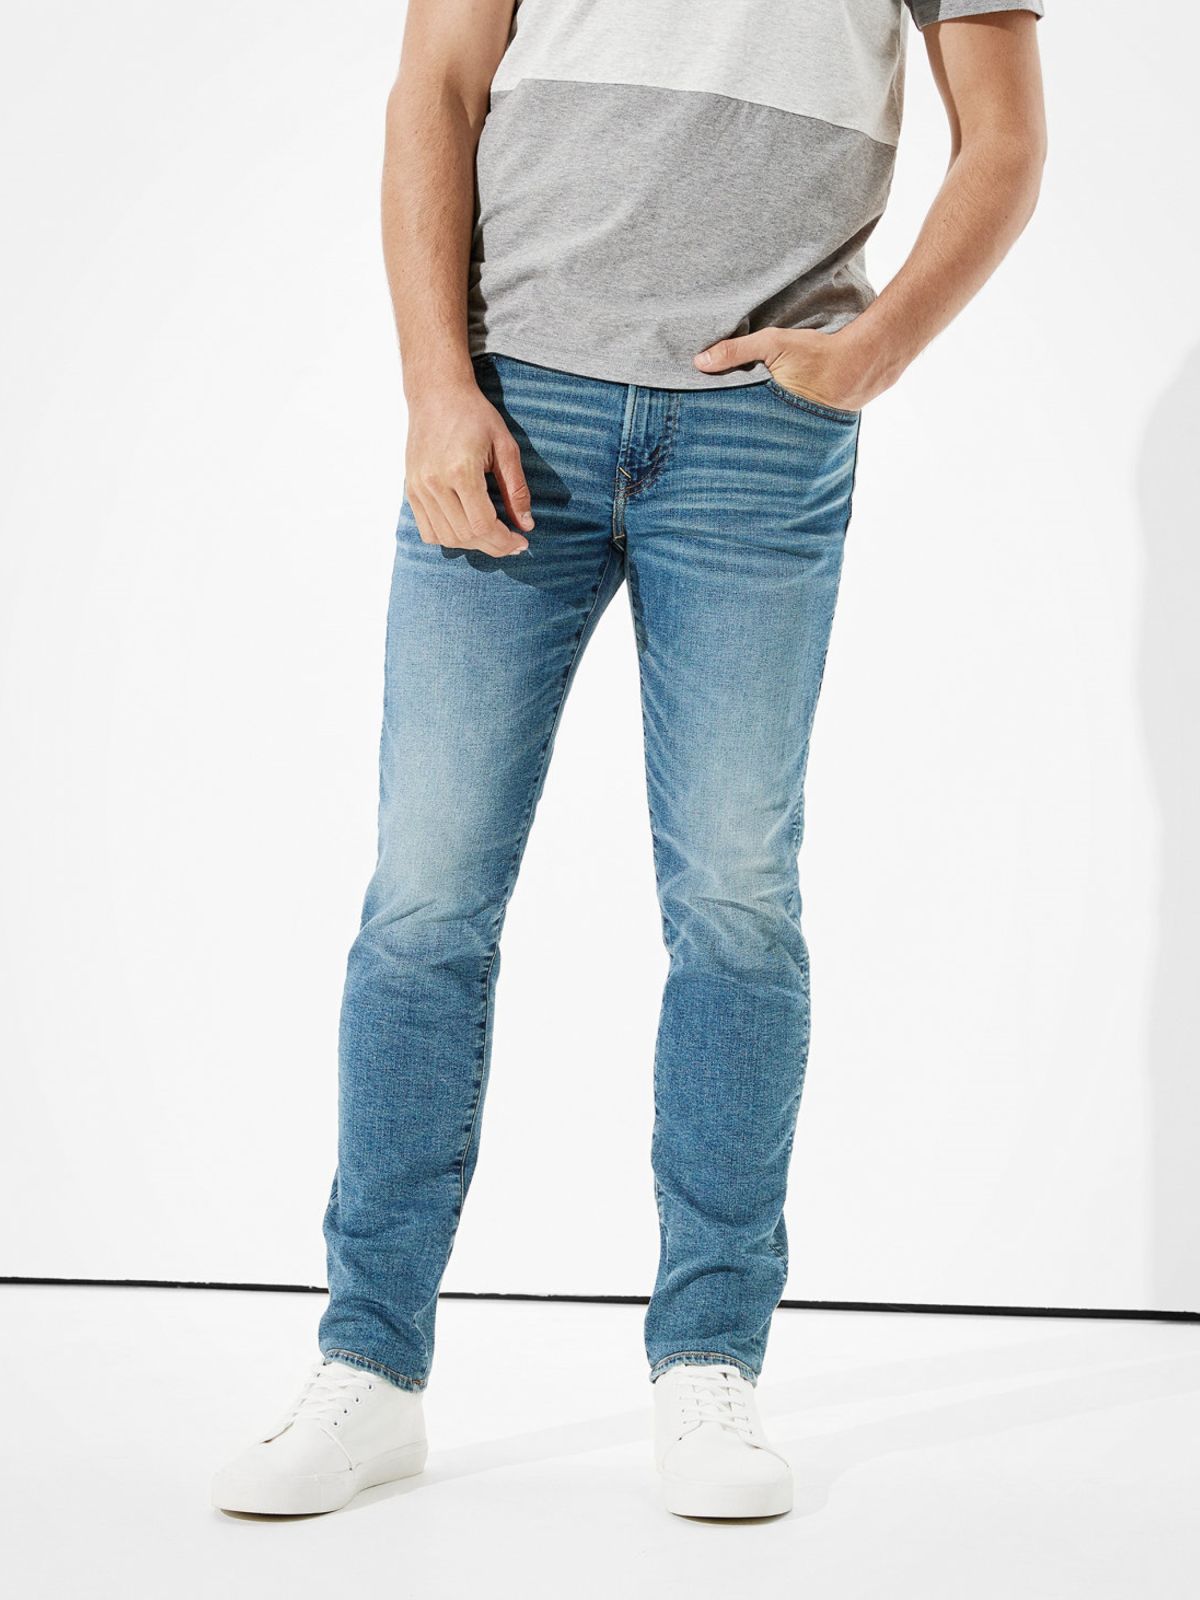  ג'ינס ארוך בשטיפה בהירה בגזרת Slim Straight של AMERICAN EAGLE